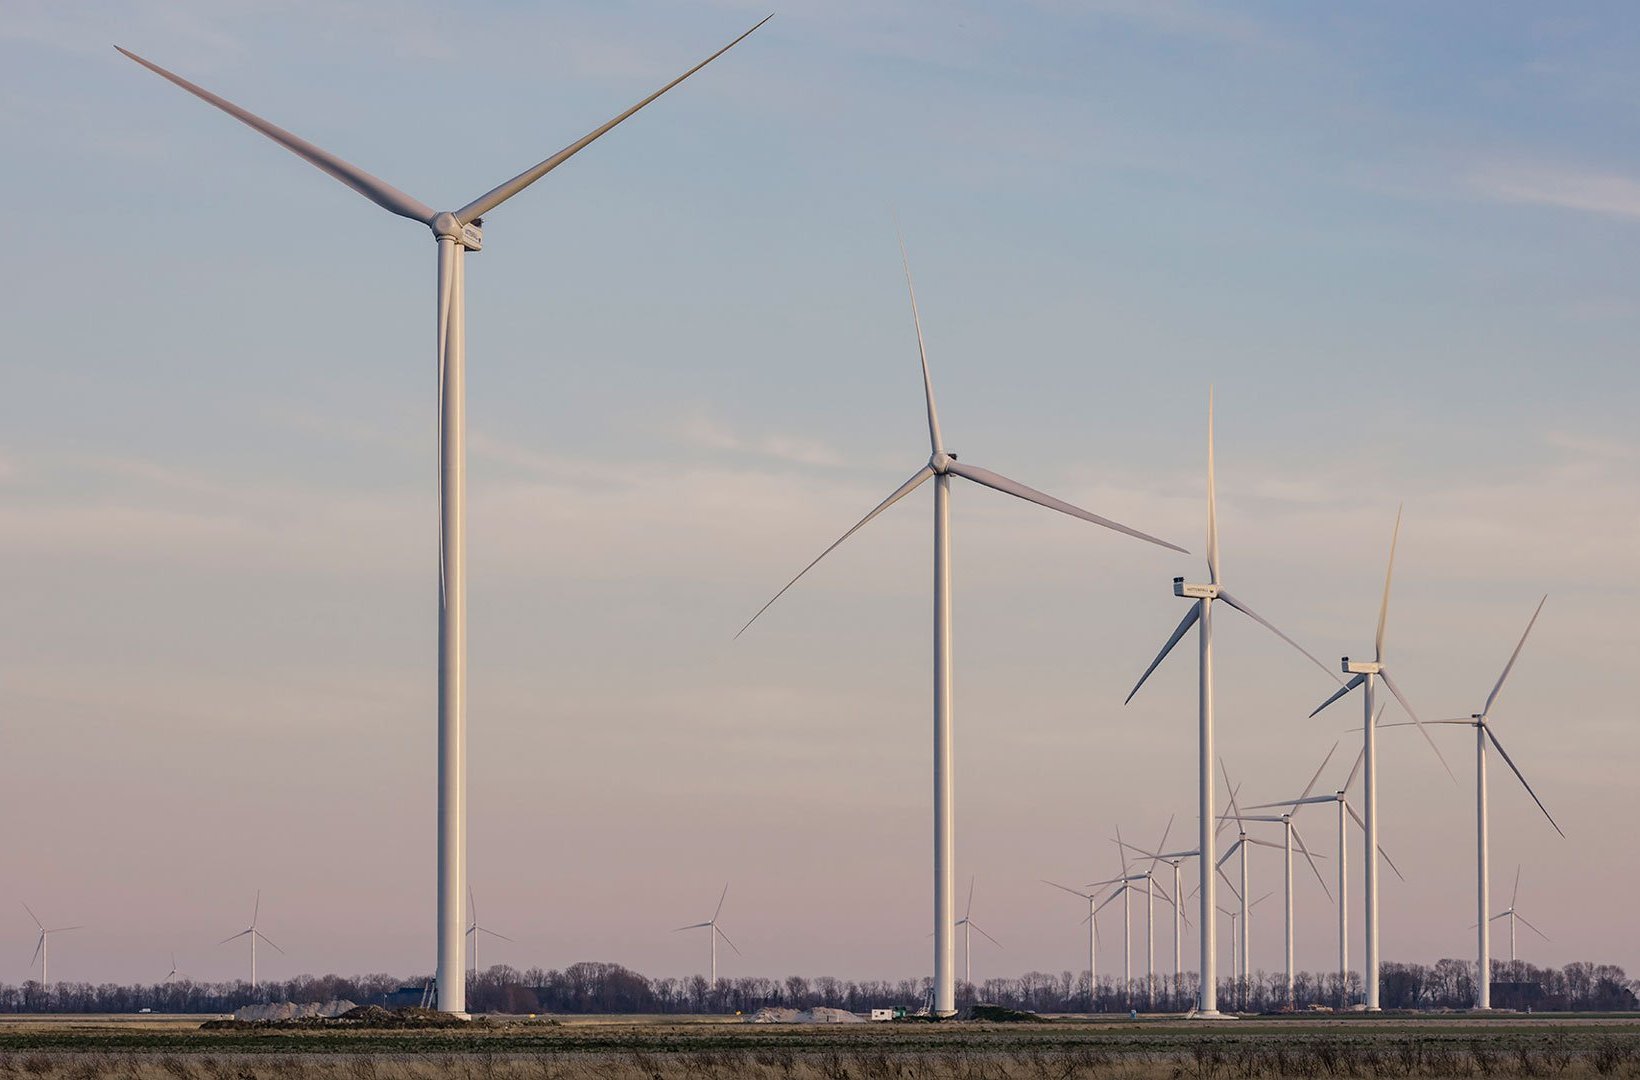 Wieringermeer windfarm. Photo: jlousberg